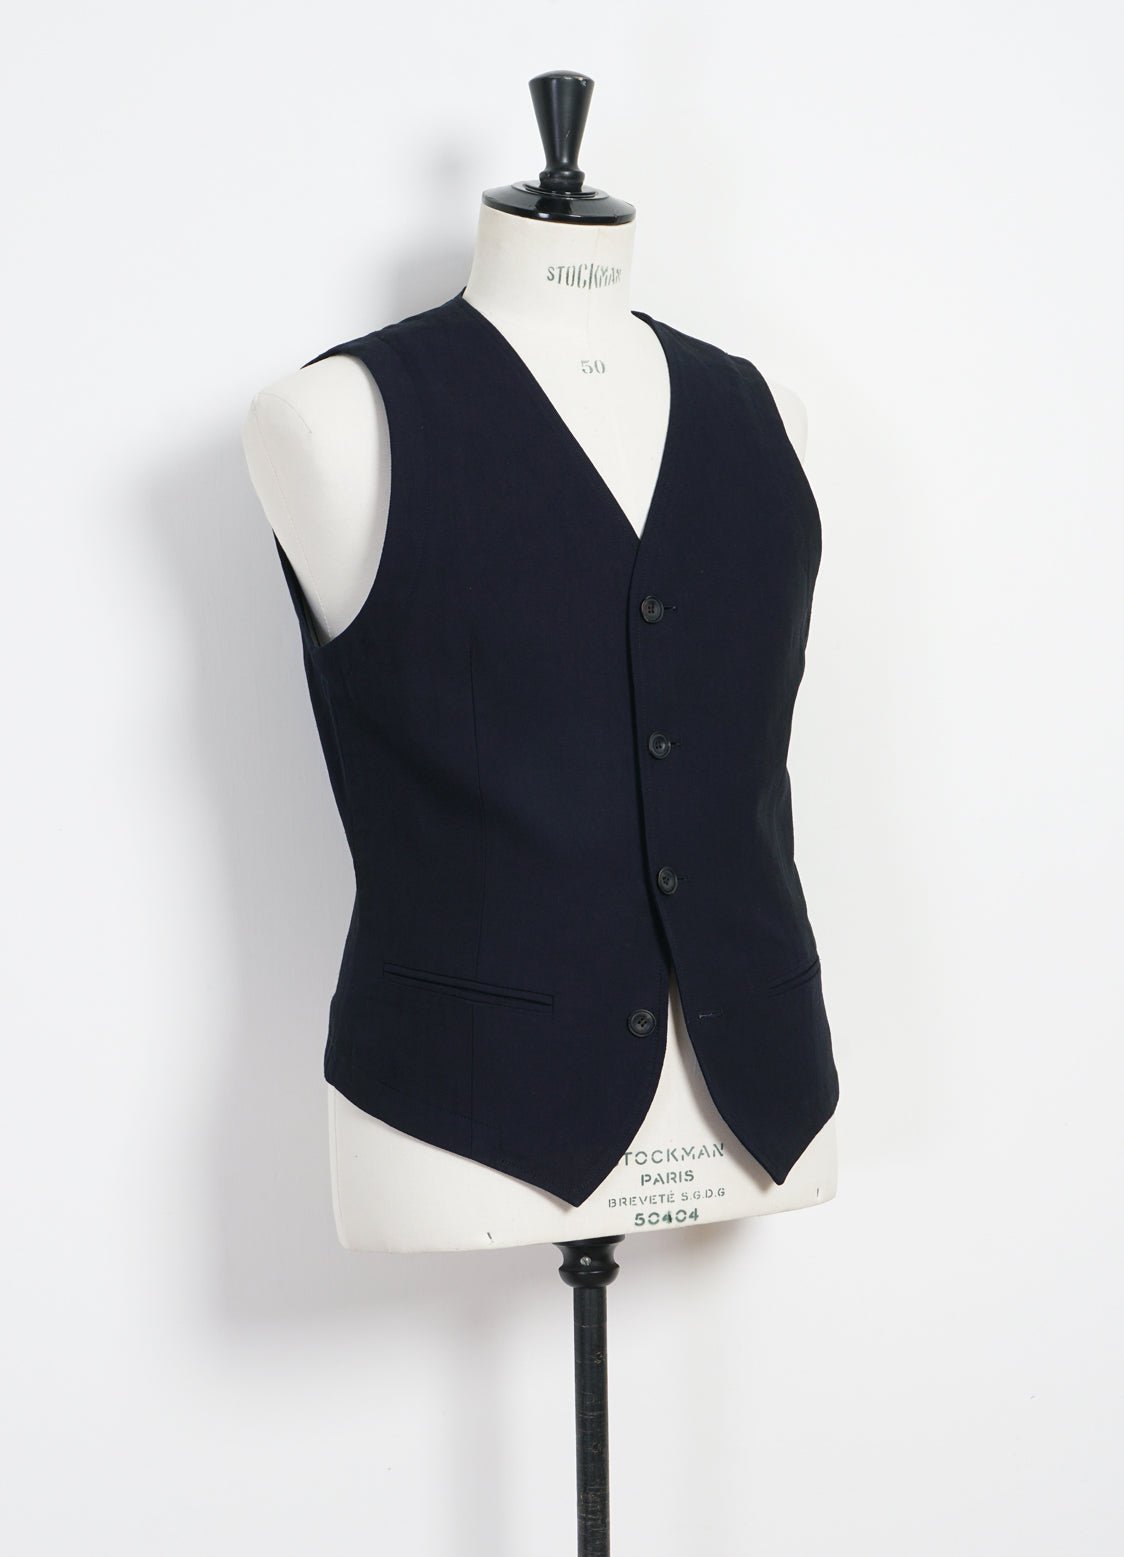 HANSEN GARMENTS - DANIEL | Classic Waistcoat | Indigo Herringbone - HANSEN Garments